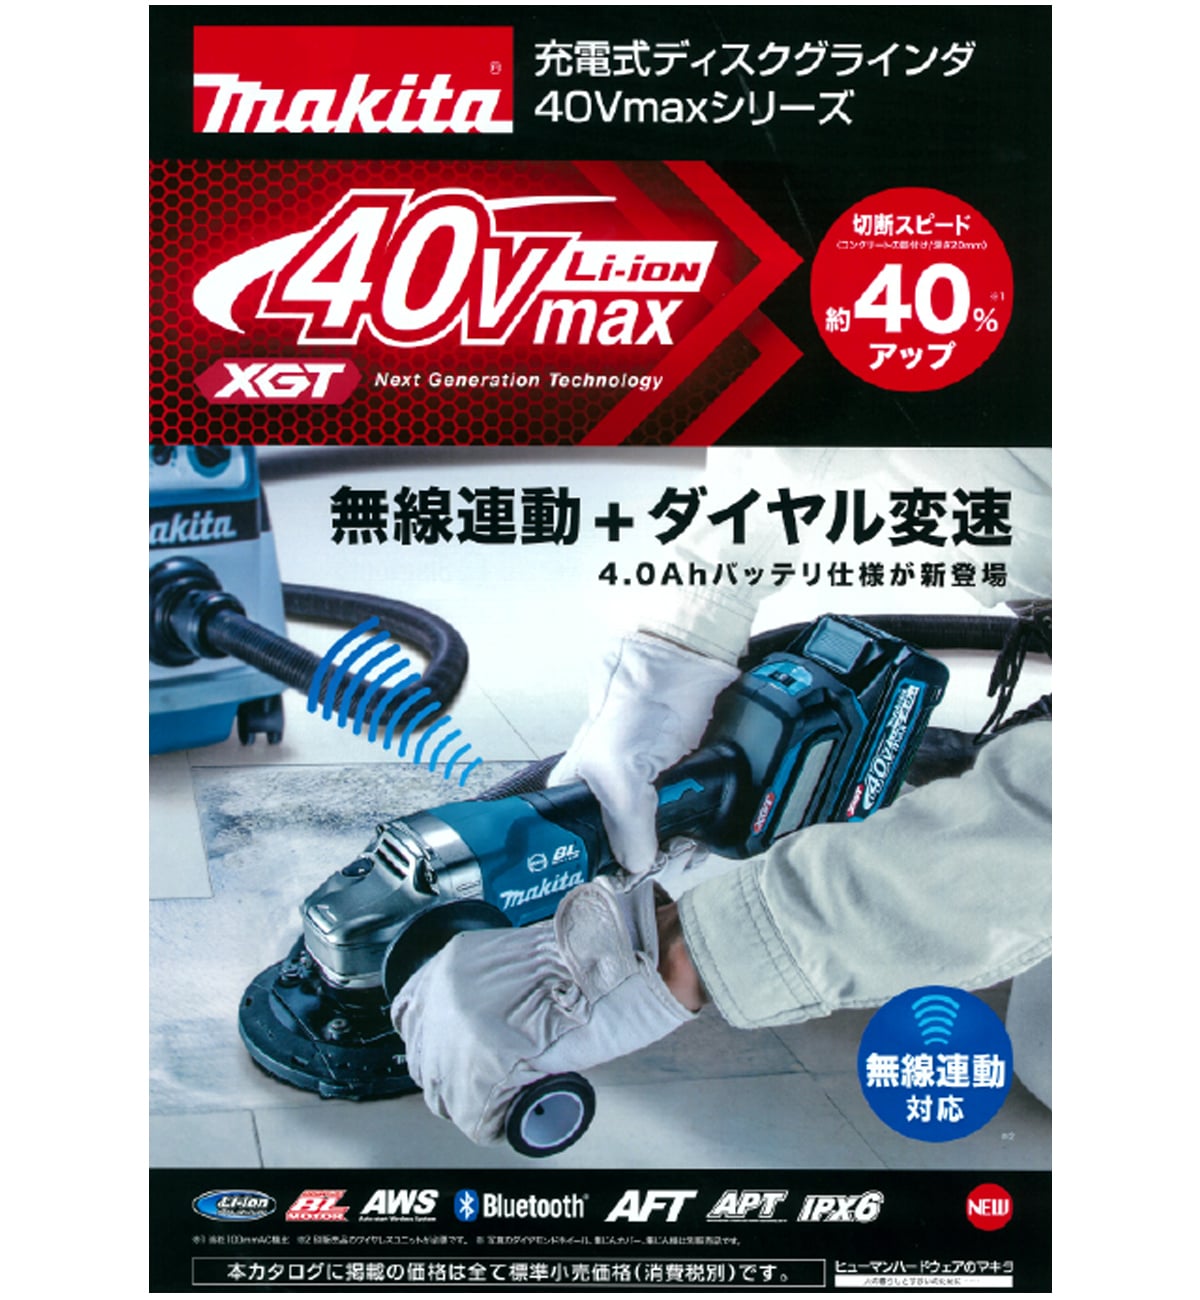 マキタ GA020GZ 125mm充電式グラインダー 40V 本体＋ケース - www